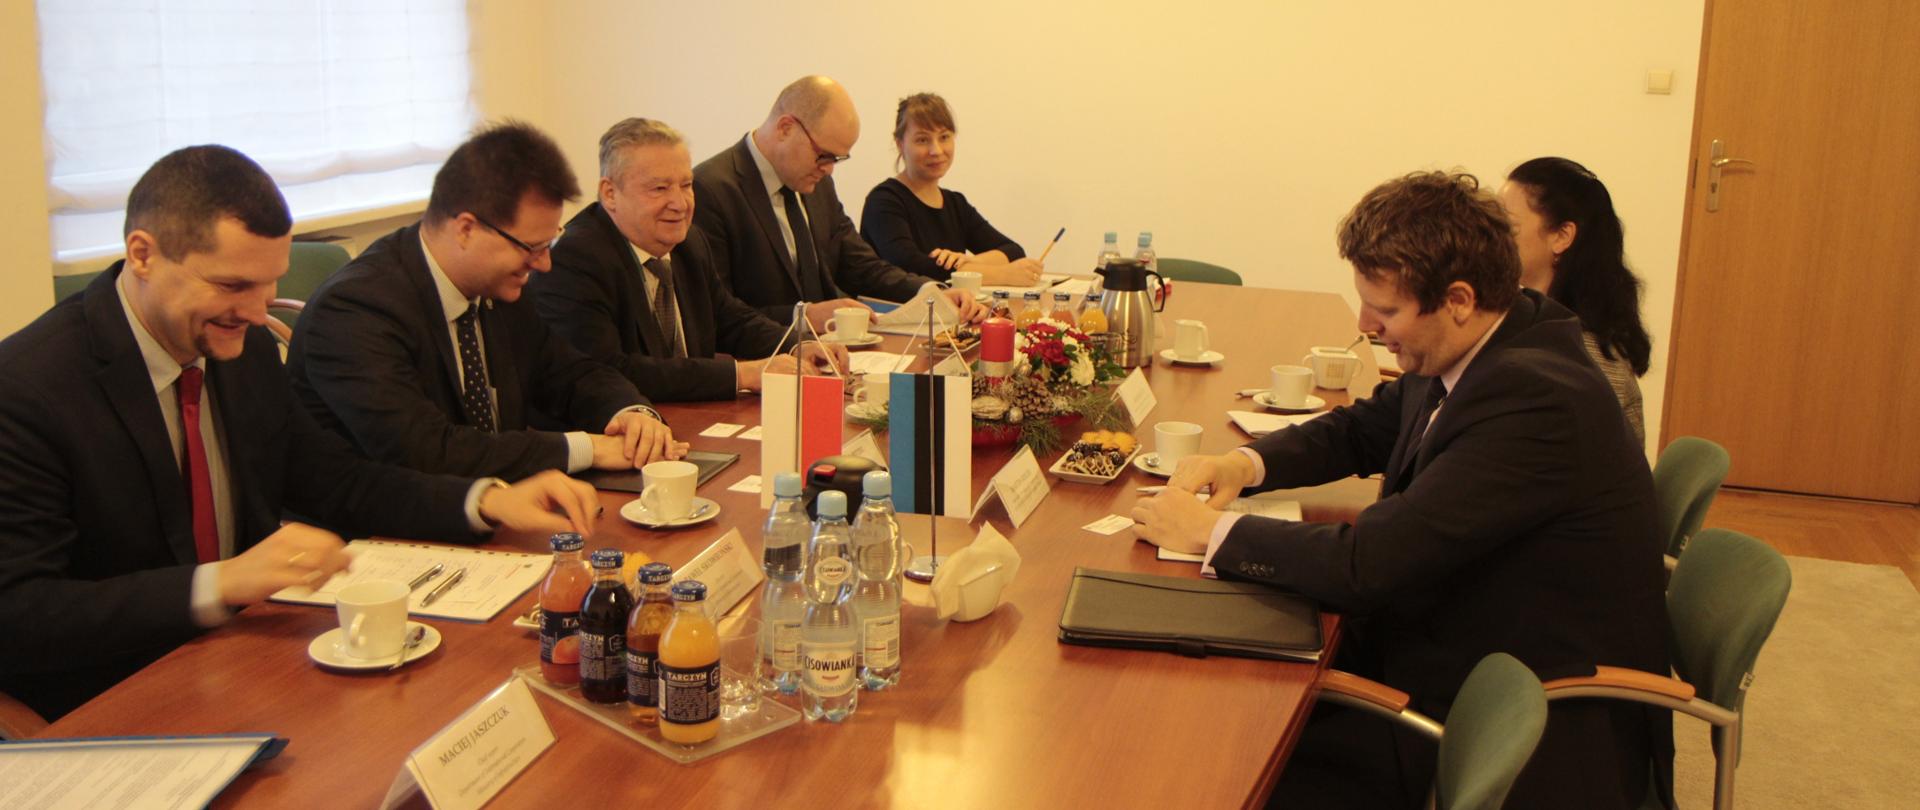 Spotkanie wiceministra Andrzeja Bittela z ambasadorem Republiki Estońskiej Martinem Rogerem